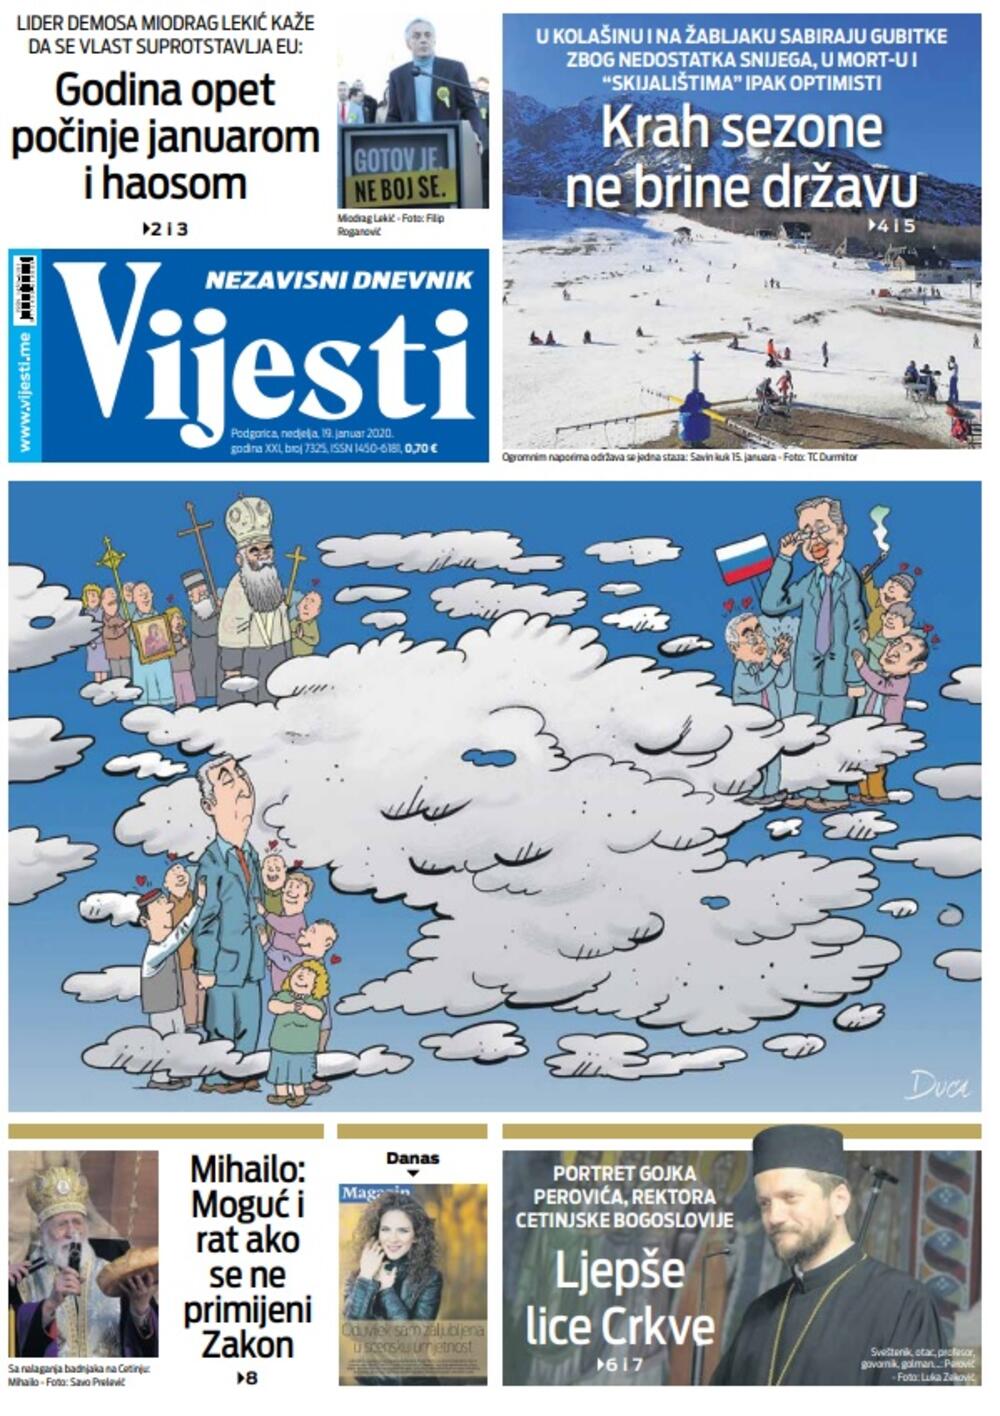 Naslovna strana "Vijesti" za 19. januar 2020. godine, Foto: "Vijesti"